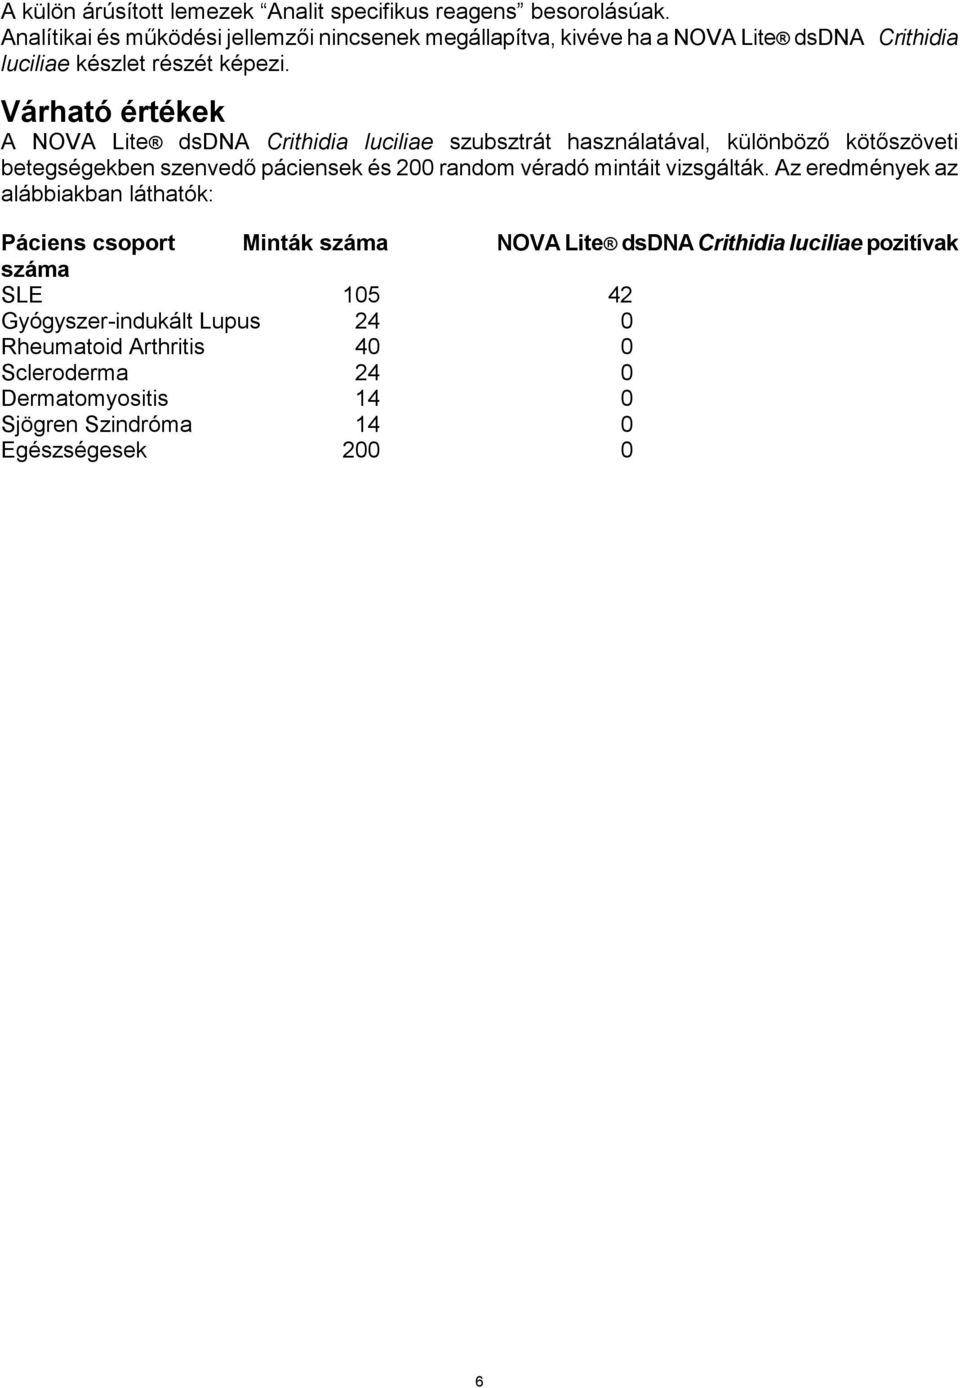 Várható értékek A NOVA Lite dsdna Crithidia luciliae szubsztrát használatával, különböző kötőszöveti betegségekben szenvedő páciensek és 200 random véradó